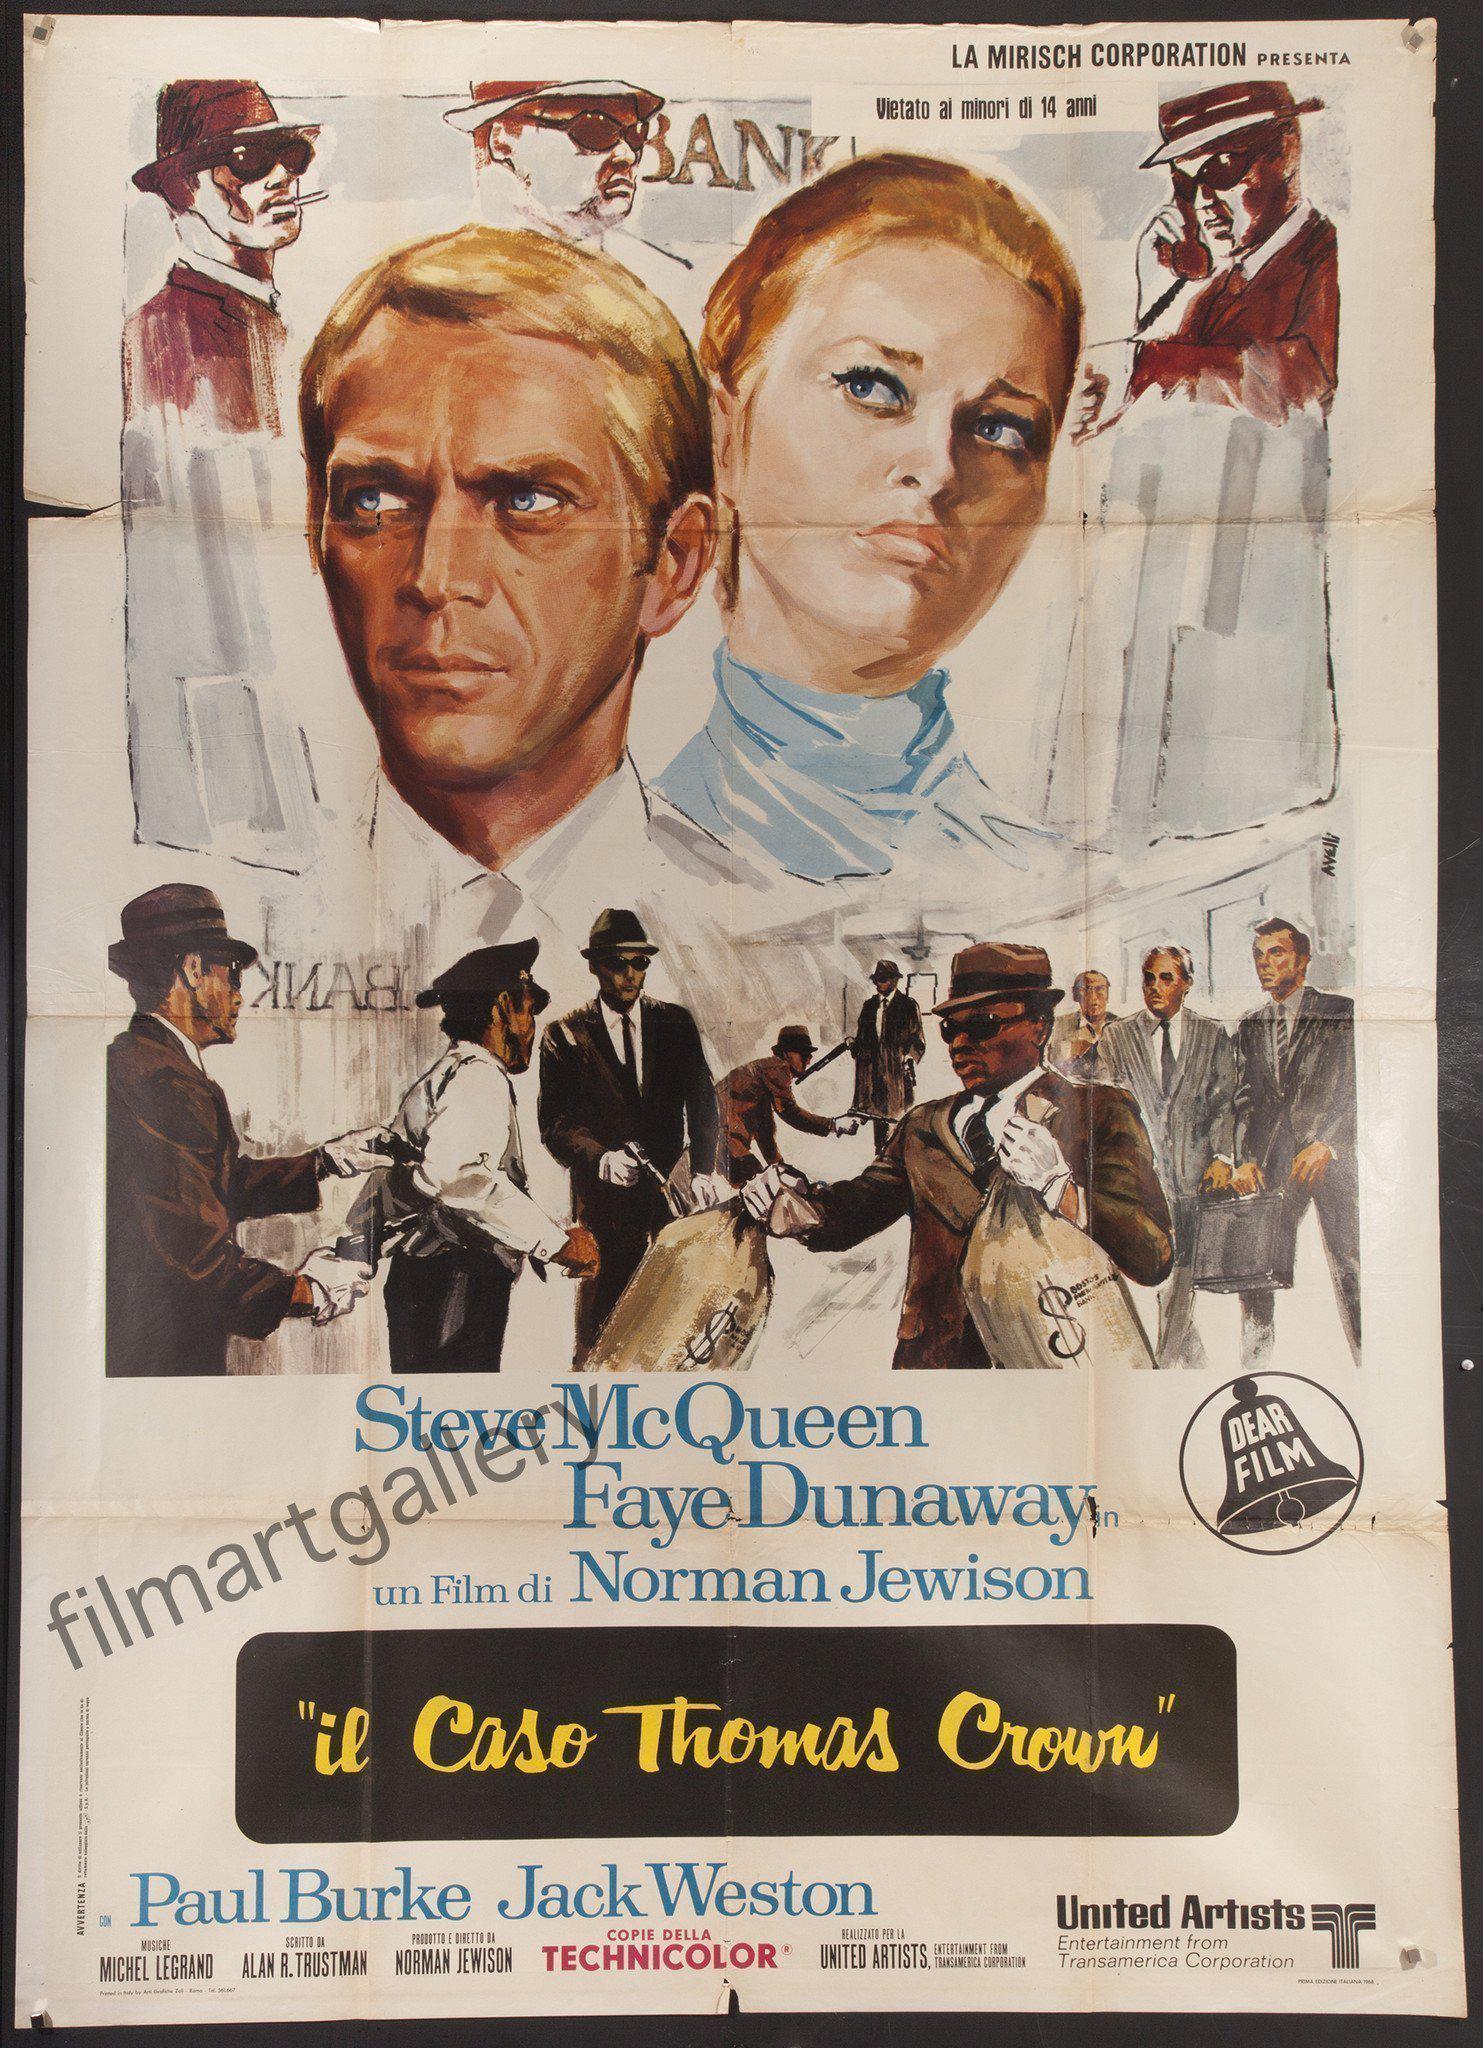 Italian Movie Poster Sizes at Original Film Art - Original Film Art -  Vintage Movie Posters